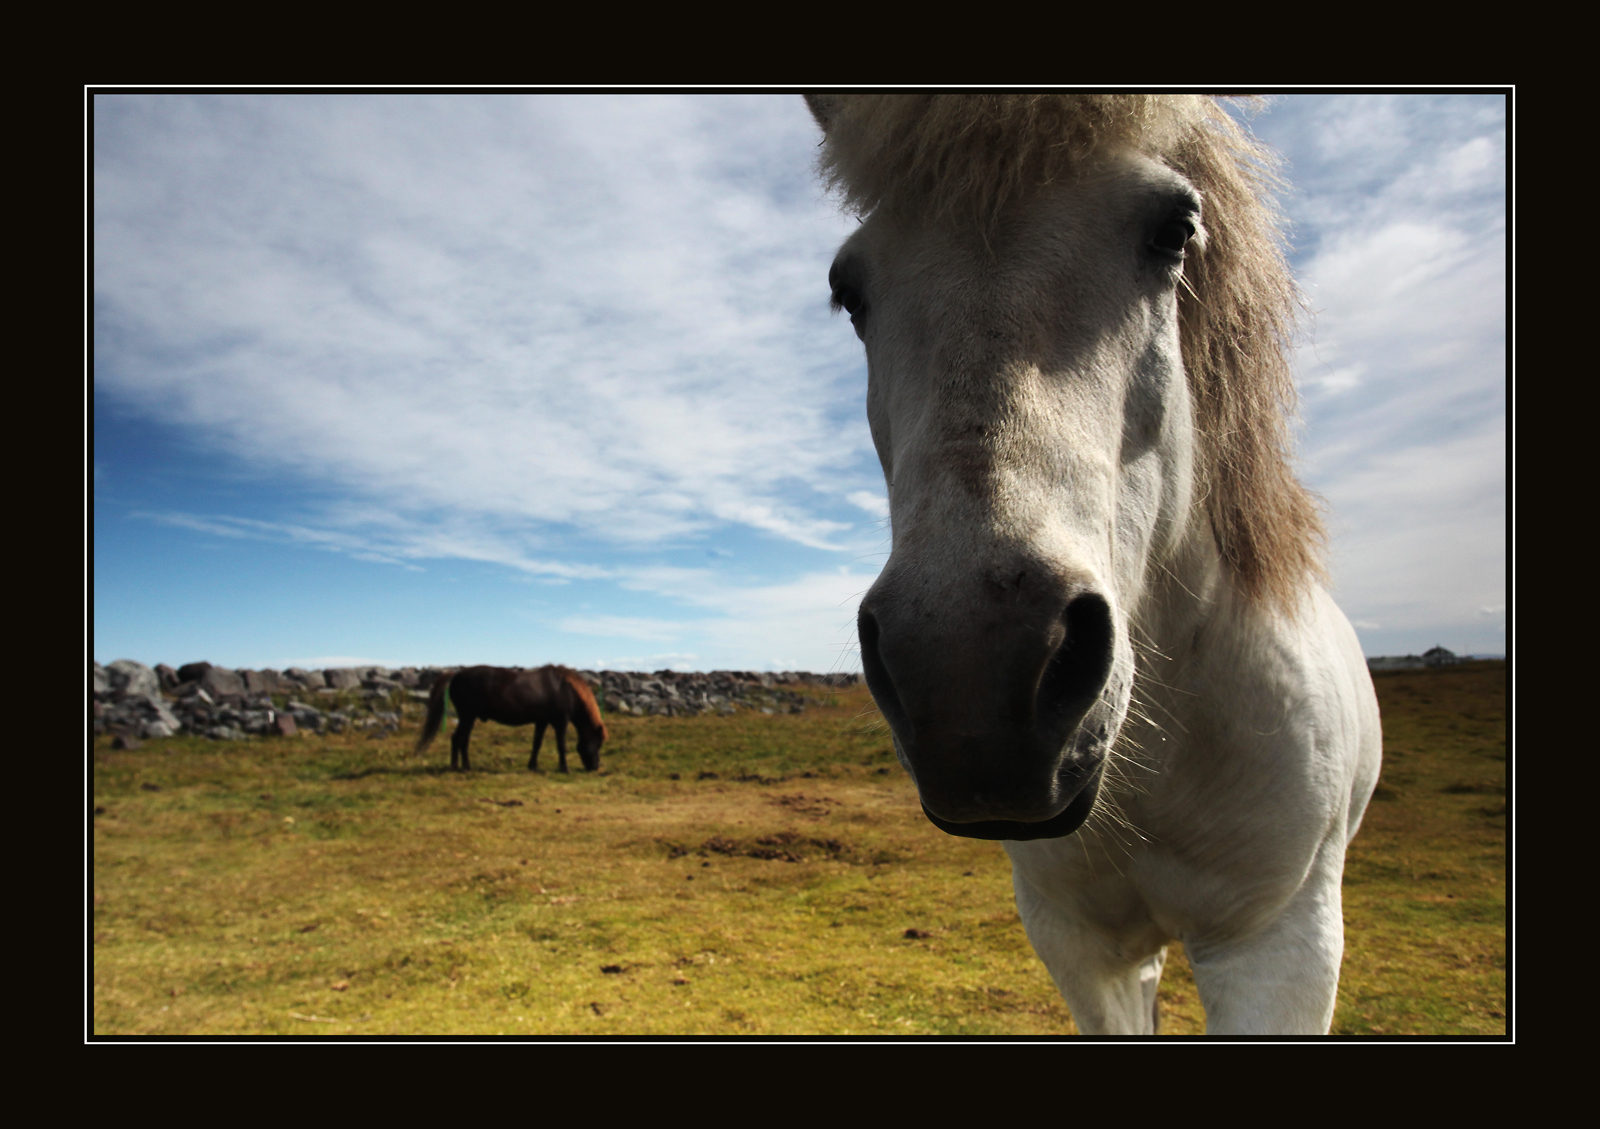 Islandský kůň